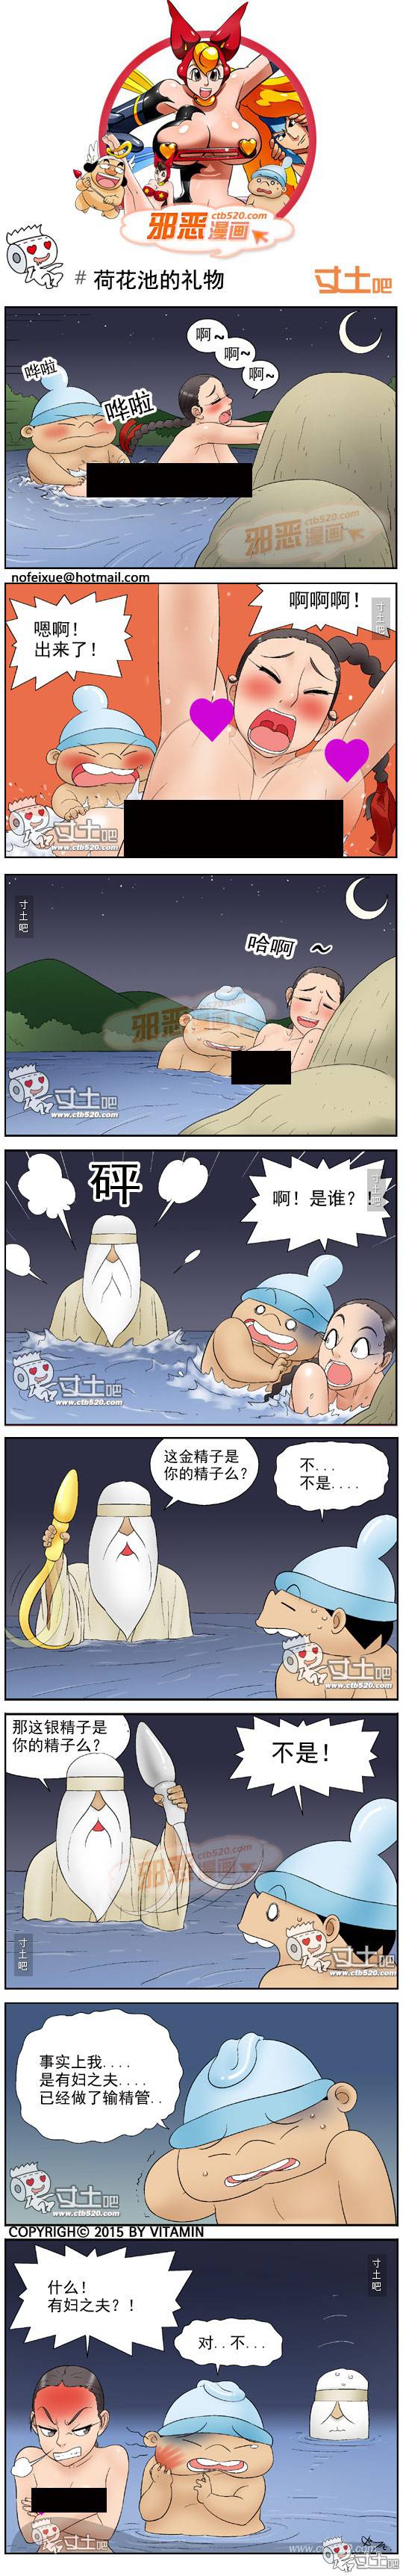 邪恶漫画爆笑囧图第313刊：放大镜时代